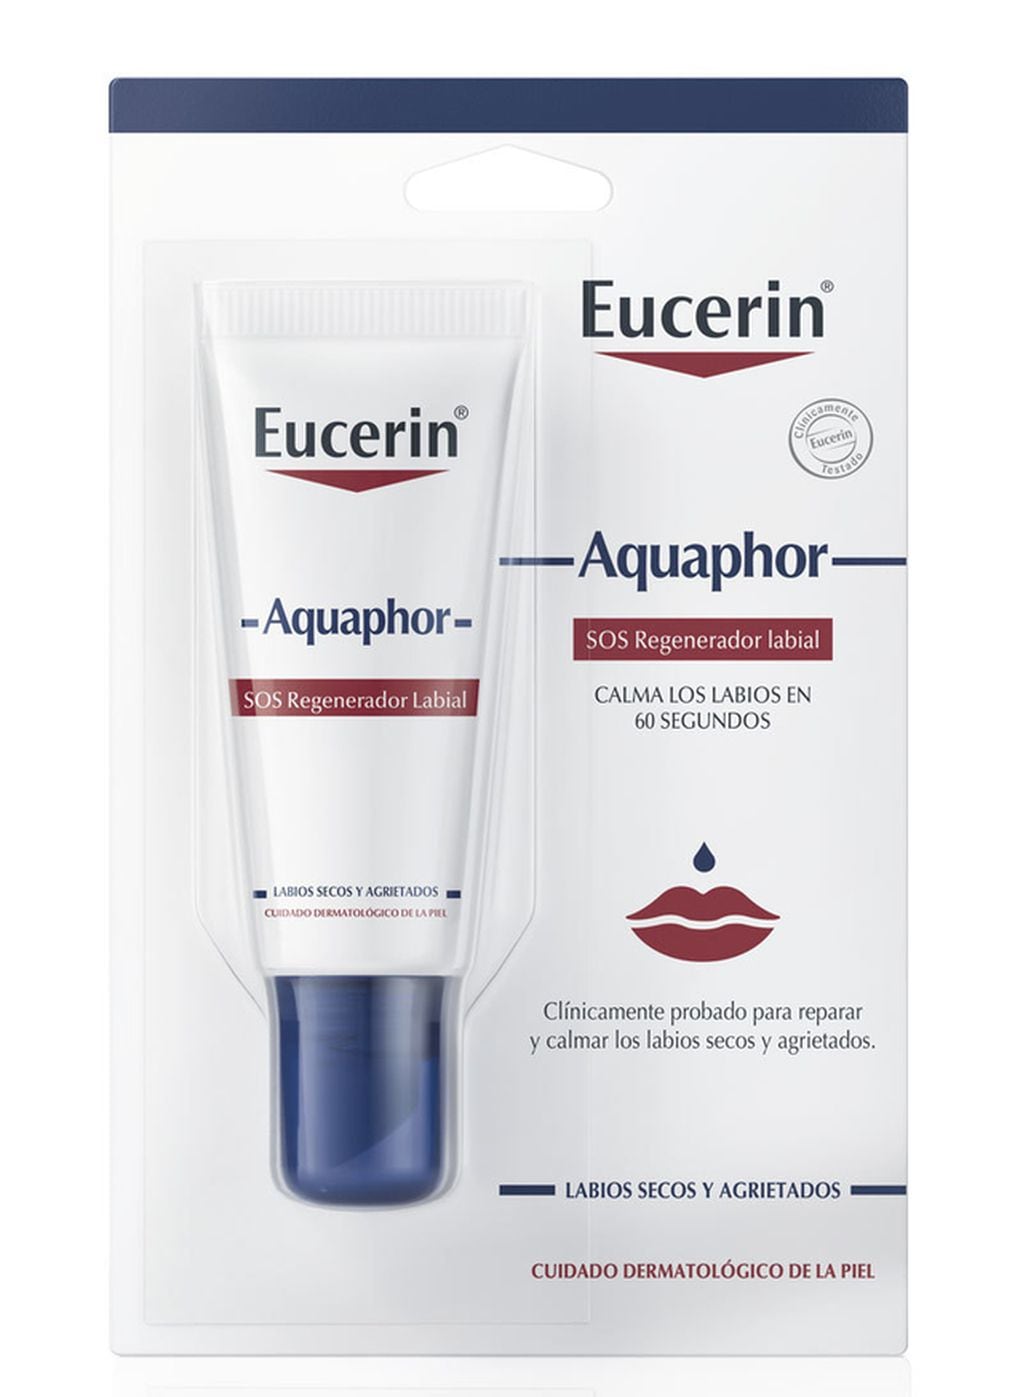 Sin dudas este producto de Eucerin cumple con lo que promete. Se consigue en farmacias por cerca de $3500